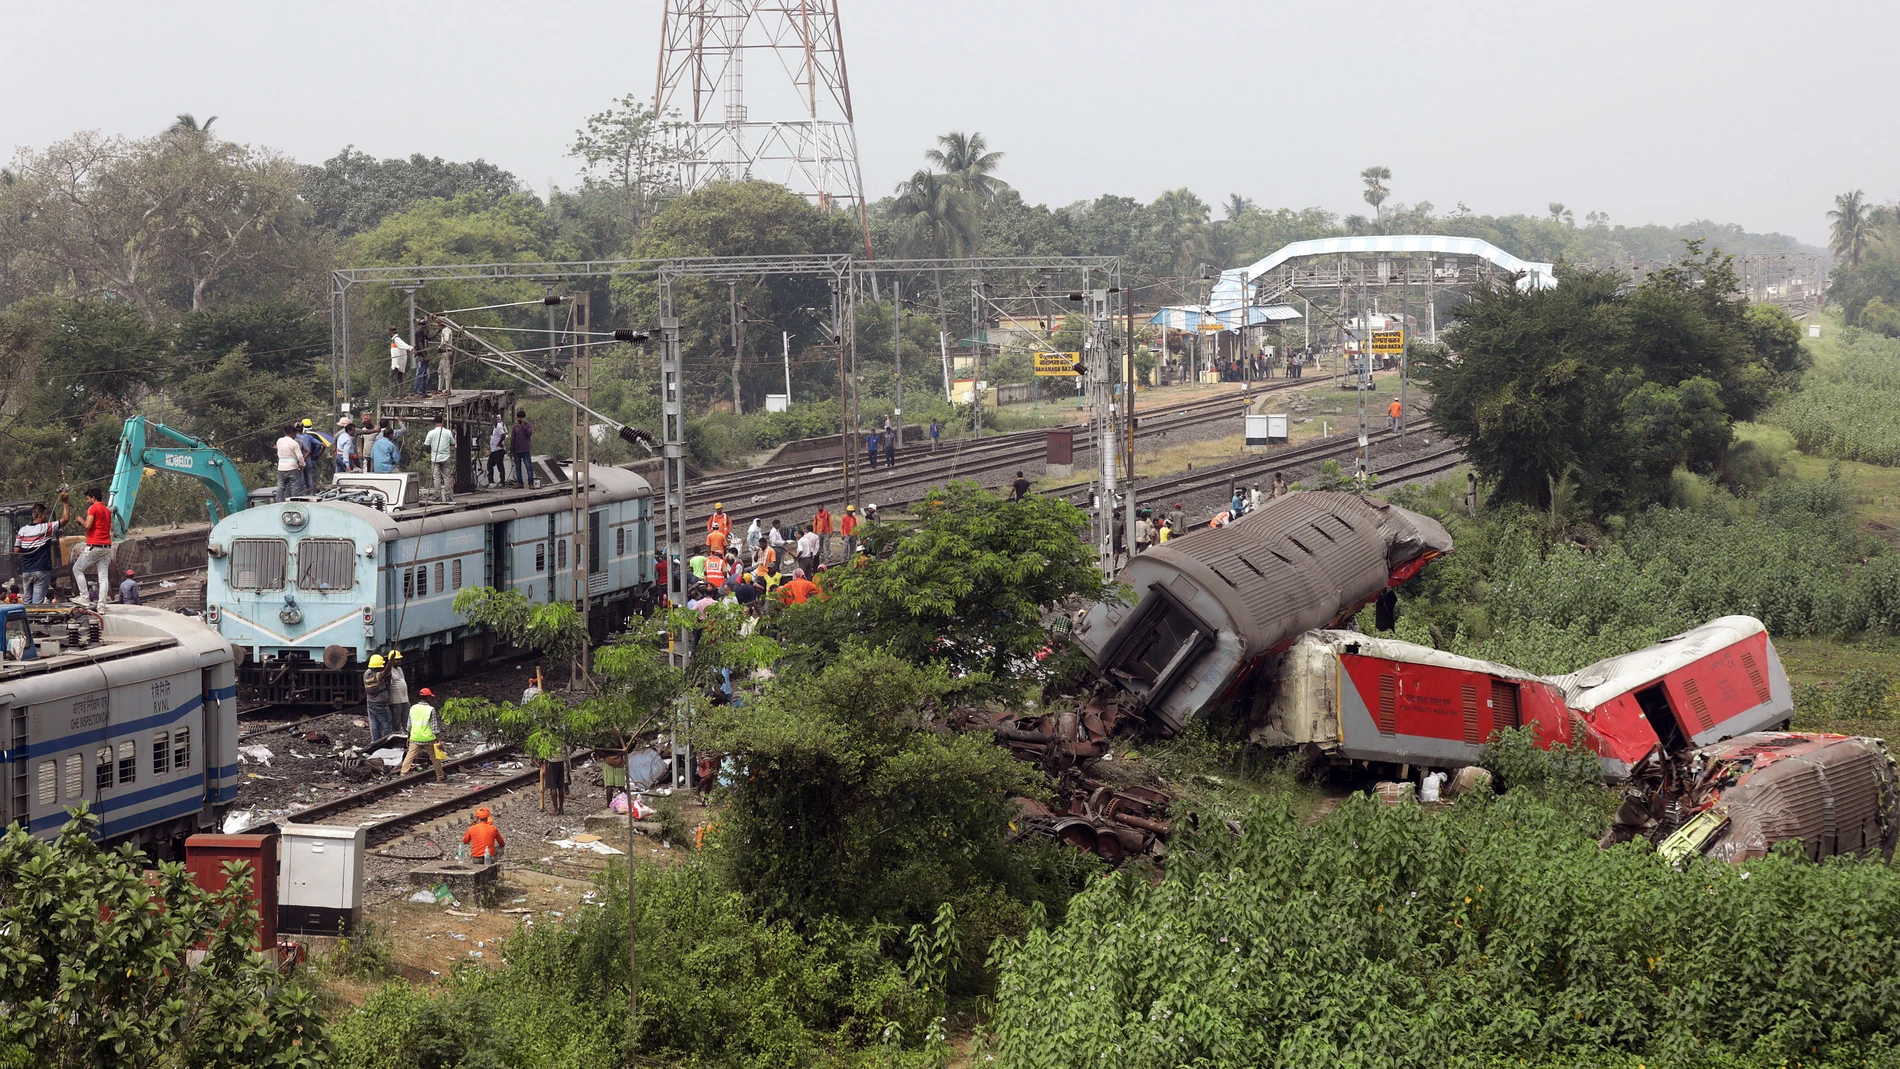 Trabajadores de tierra del ferrocarril indio instalan nuevas vías de tren en el lugar de un accidente de tren en Odisha Balasore, India